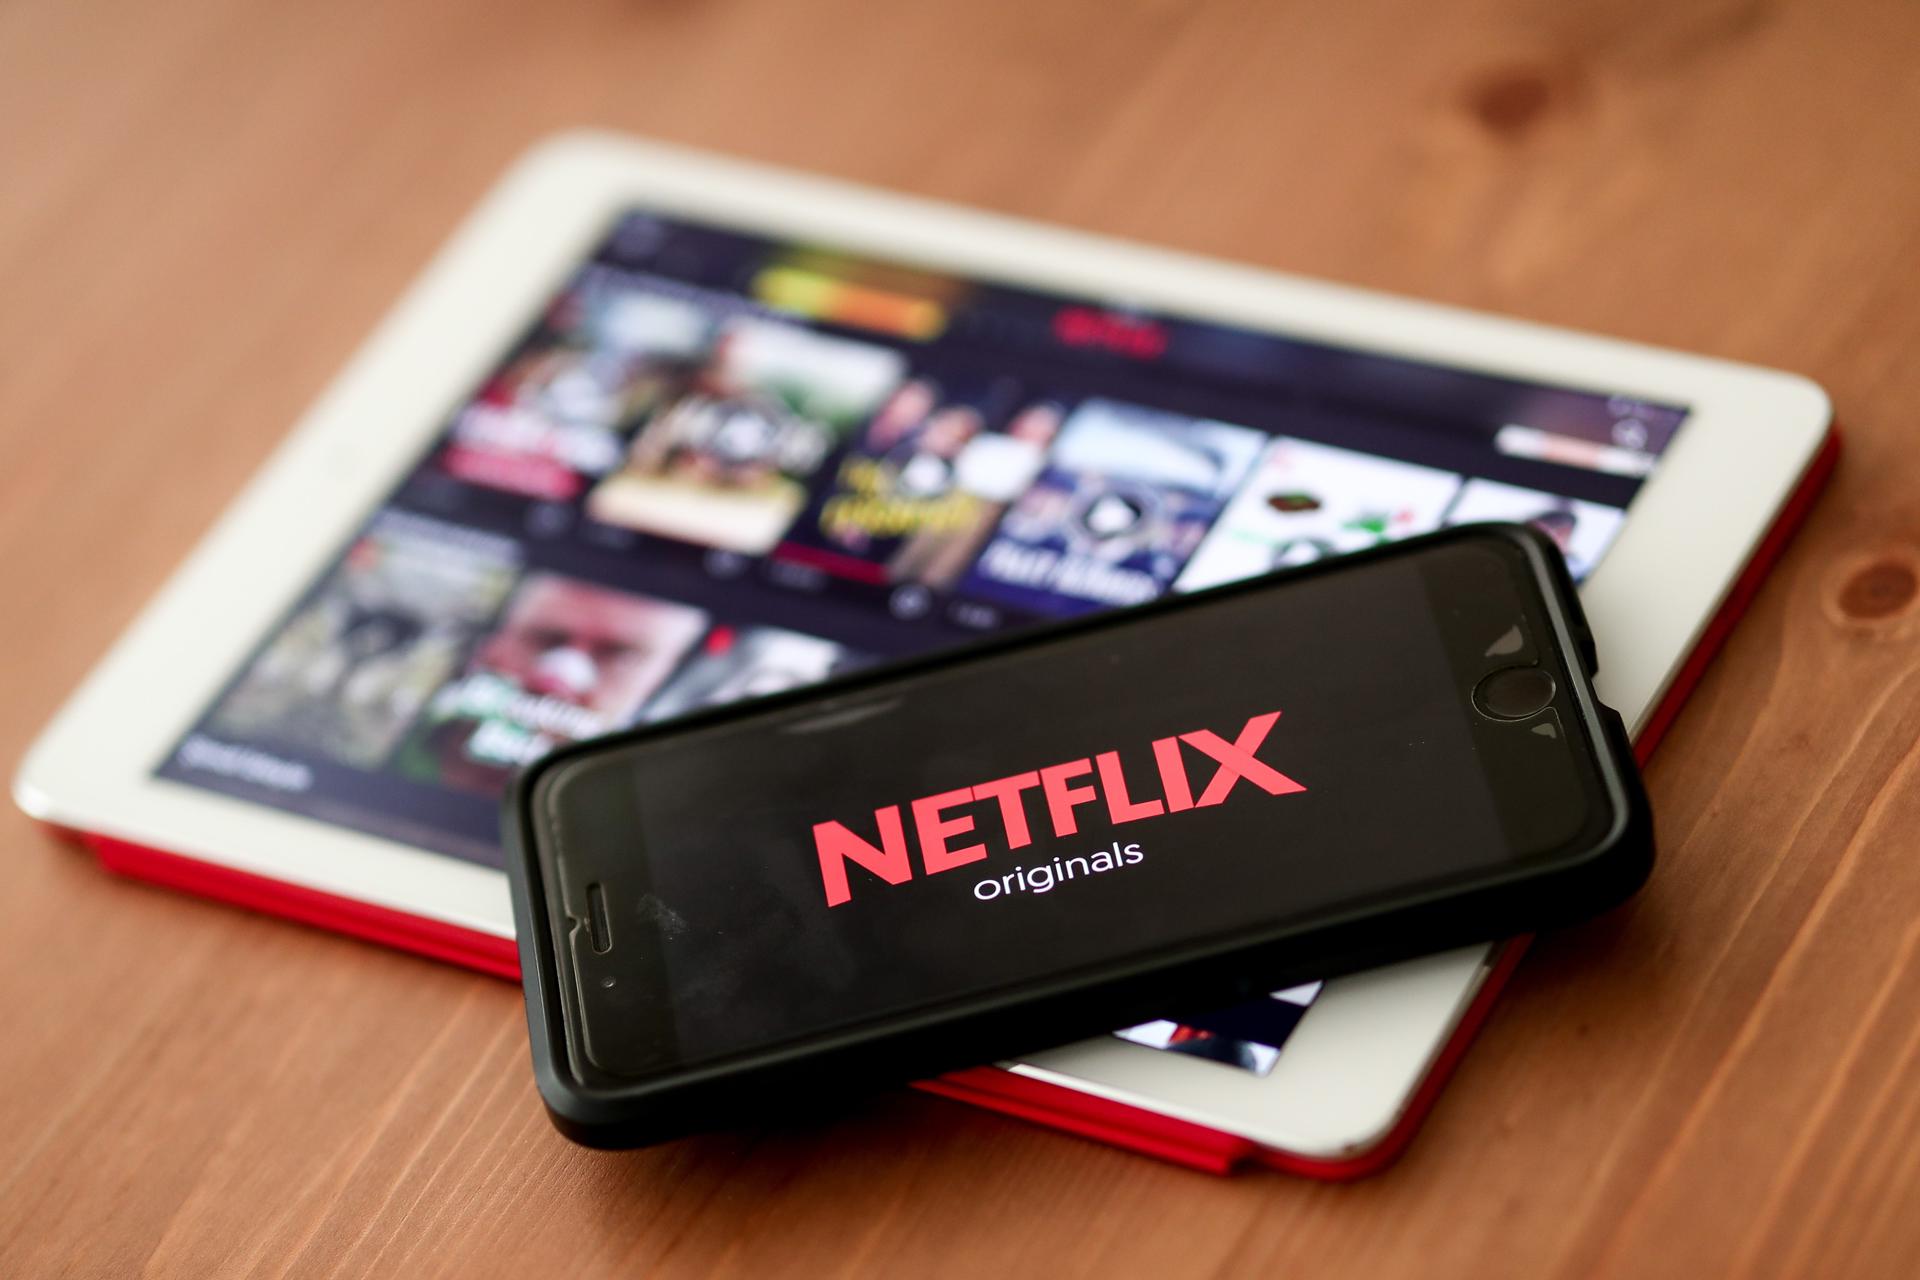 Netflix aumenta el porcentaje de inclusión y equidad en sus producciones